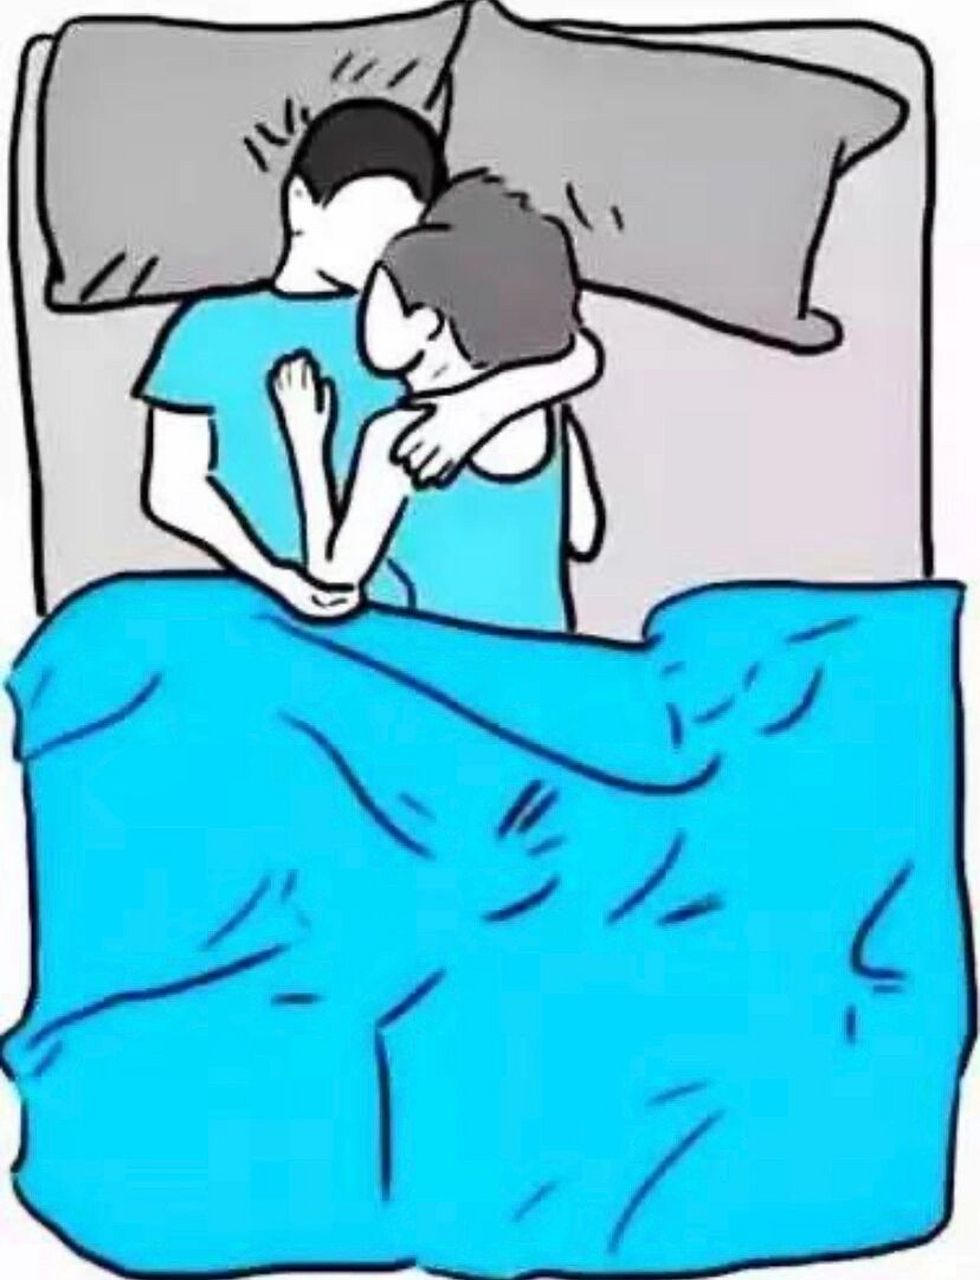 终于知道男生为什么都喜欢这样抱着女生睡了 因为舒服啊,抱着的比被抱